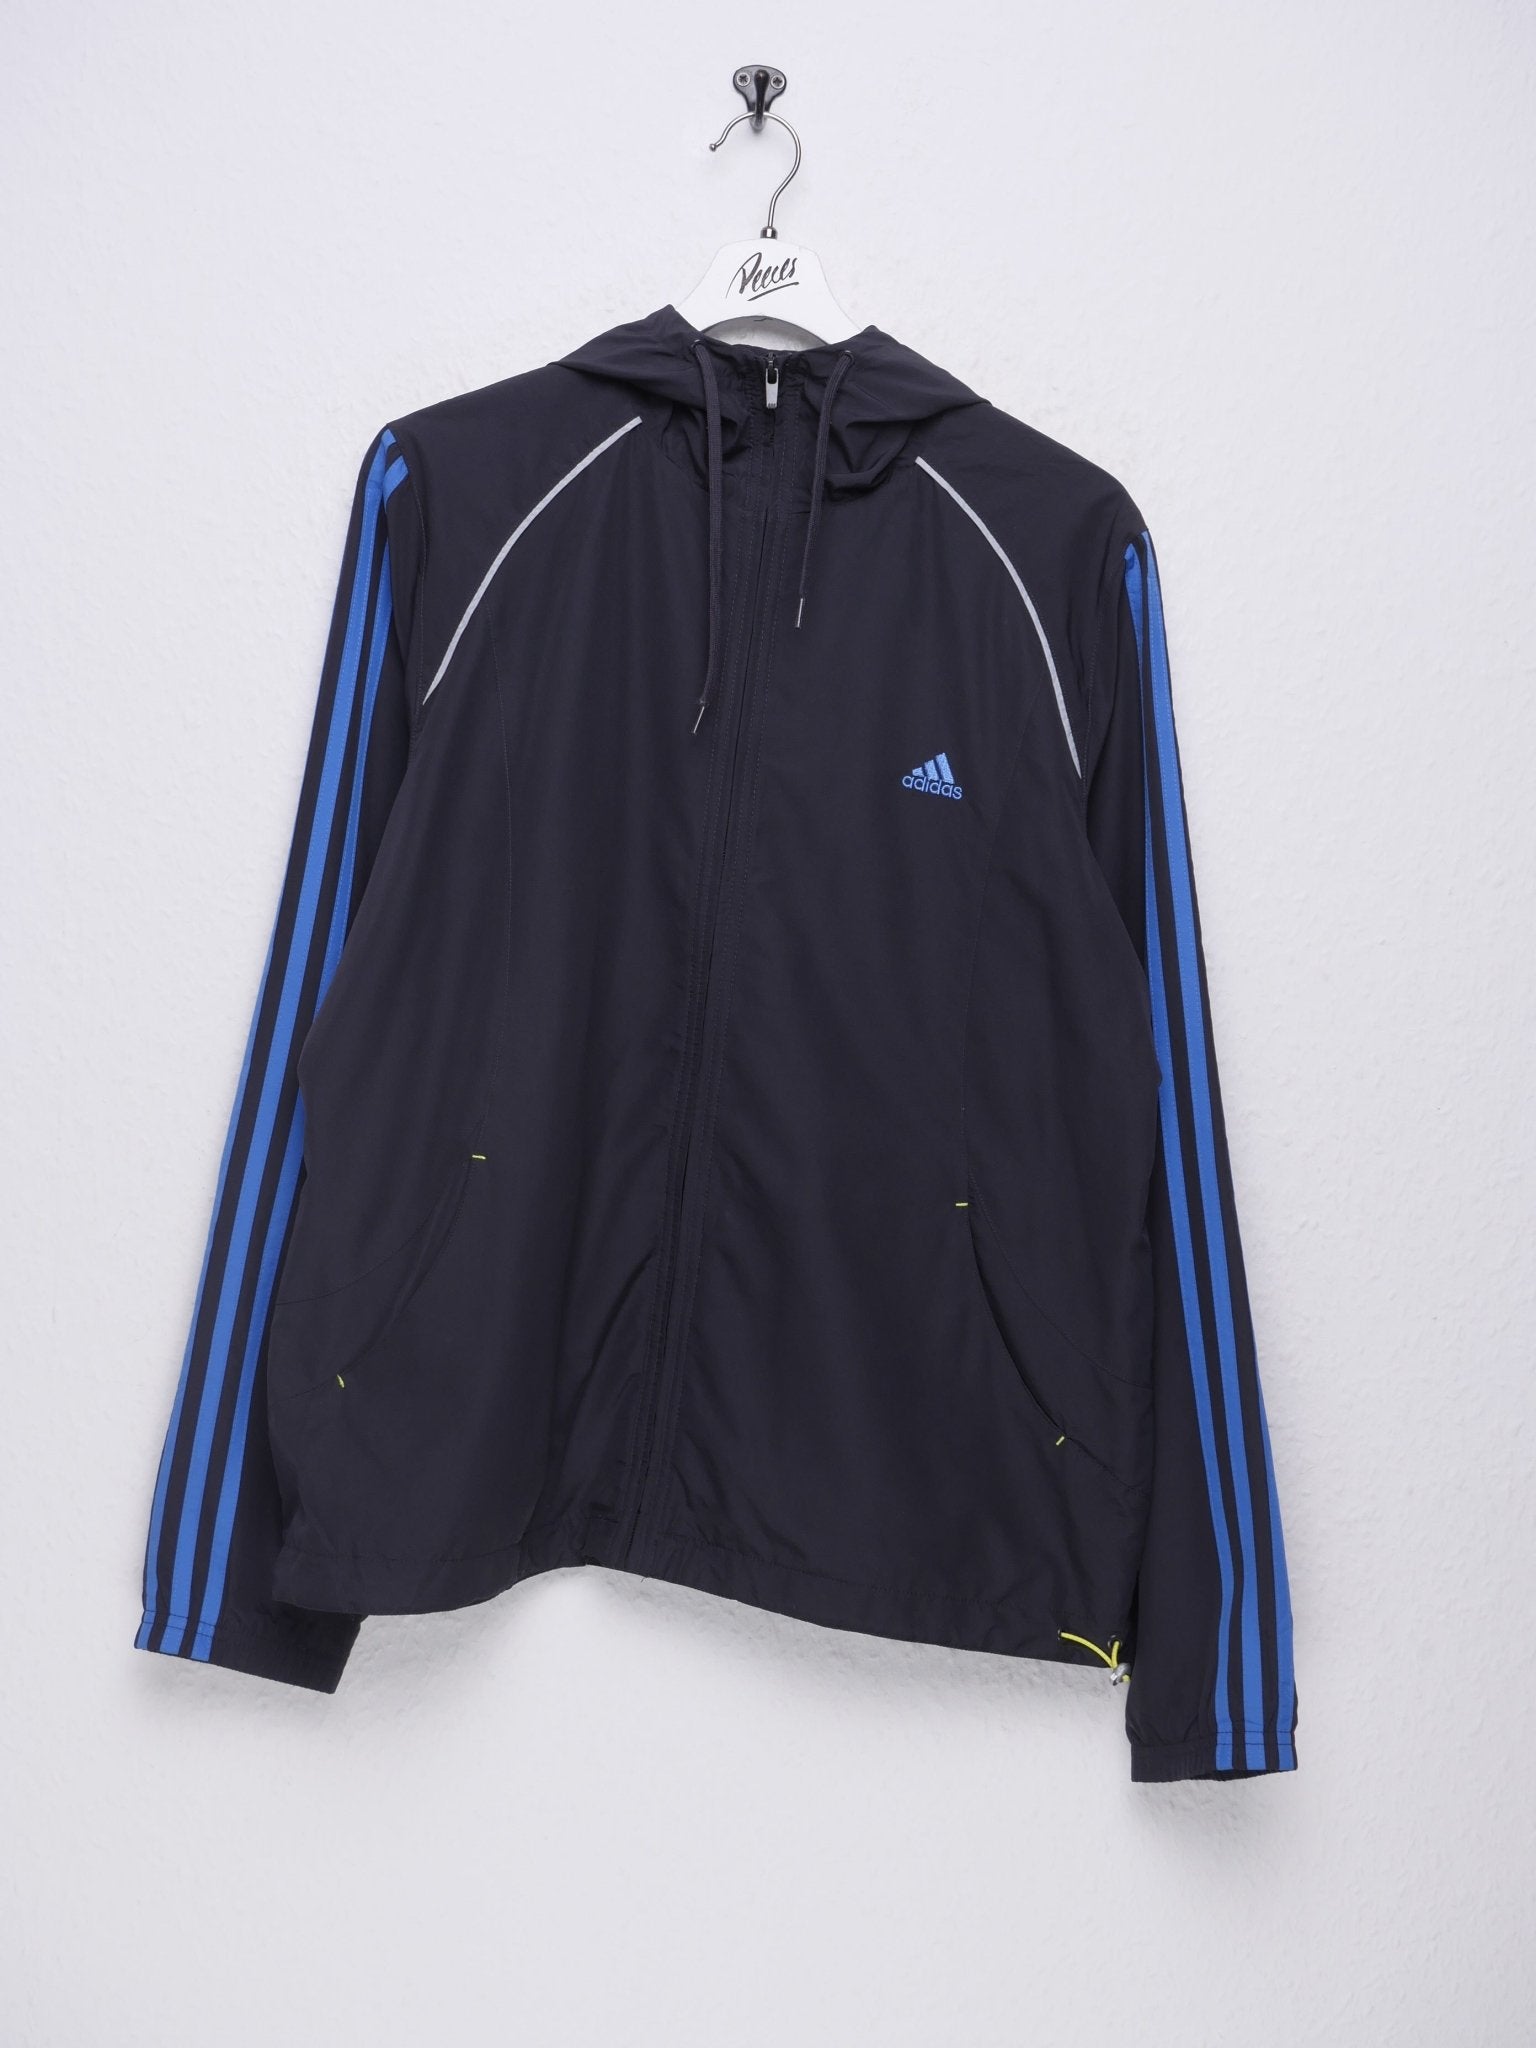 Adidas emboidered Logo Vintage Track Jacke - Peeces